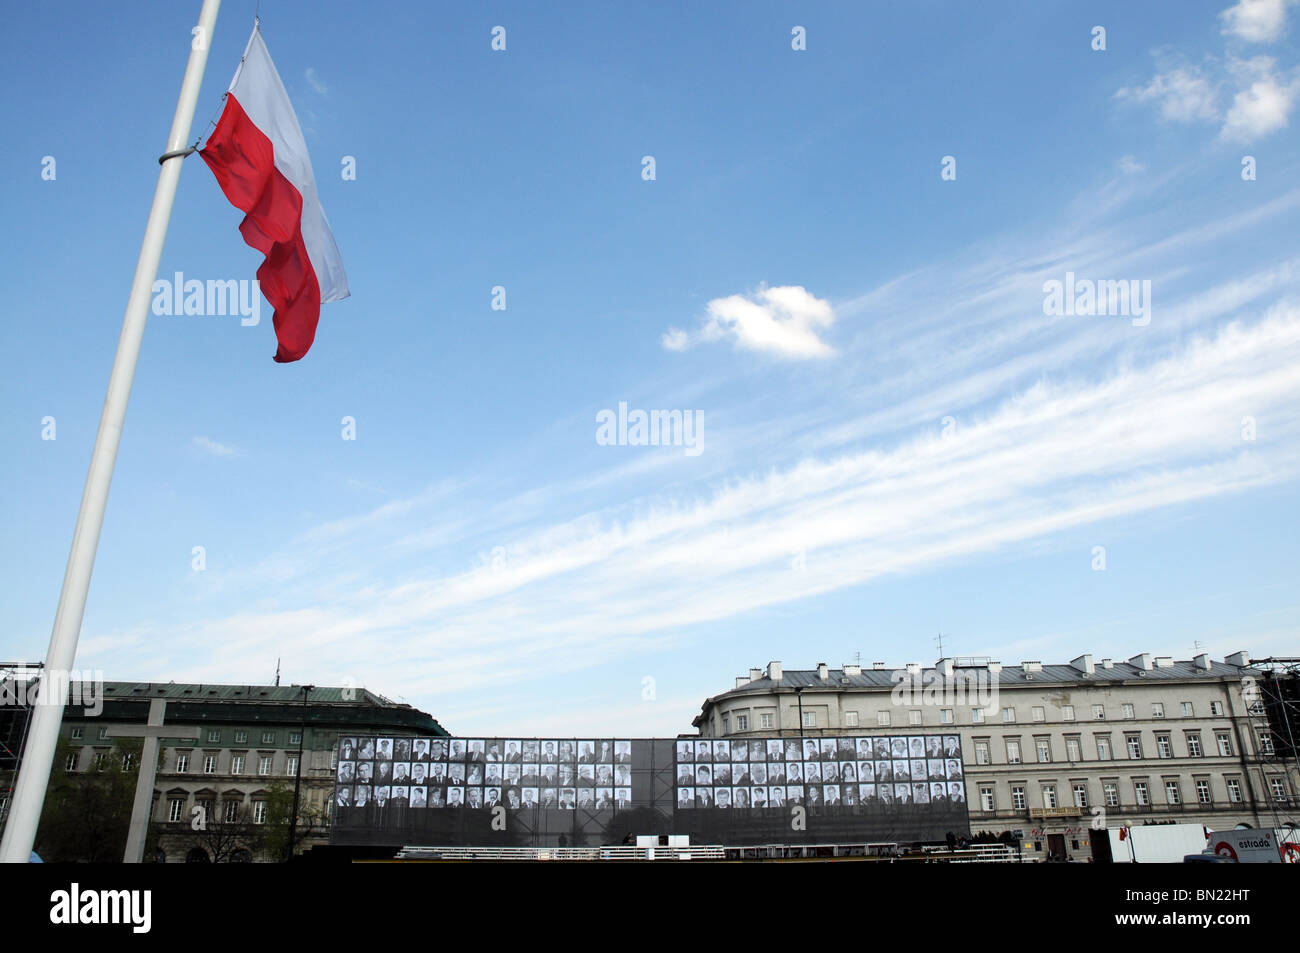 Warschau: riesige Leinwand mit Fotos von allen Opfern des polnischen Präsidenten Flugzeugabsturz bei Smolensk, Russland Stockfoto